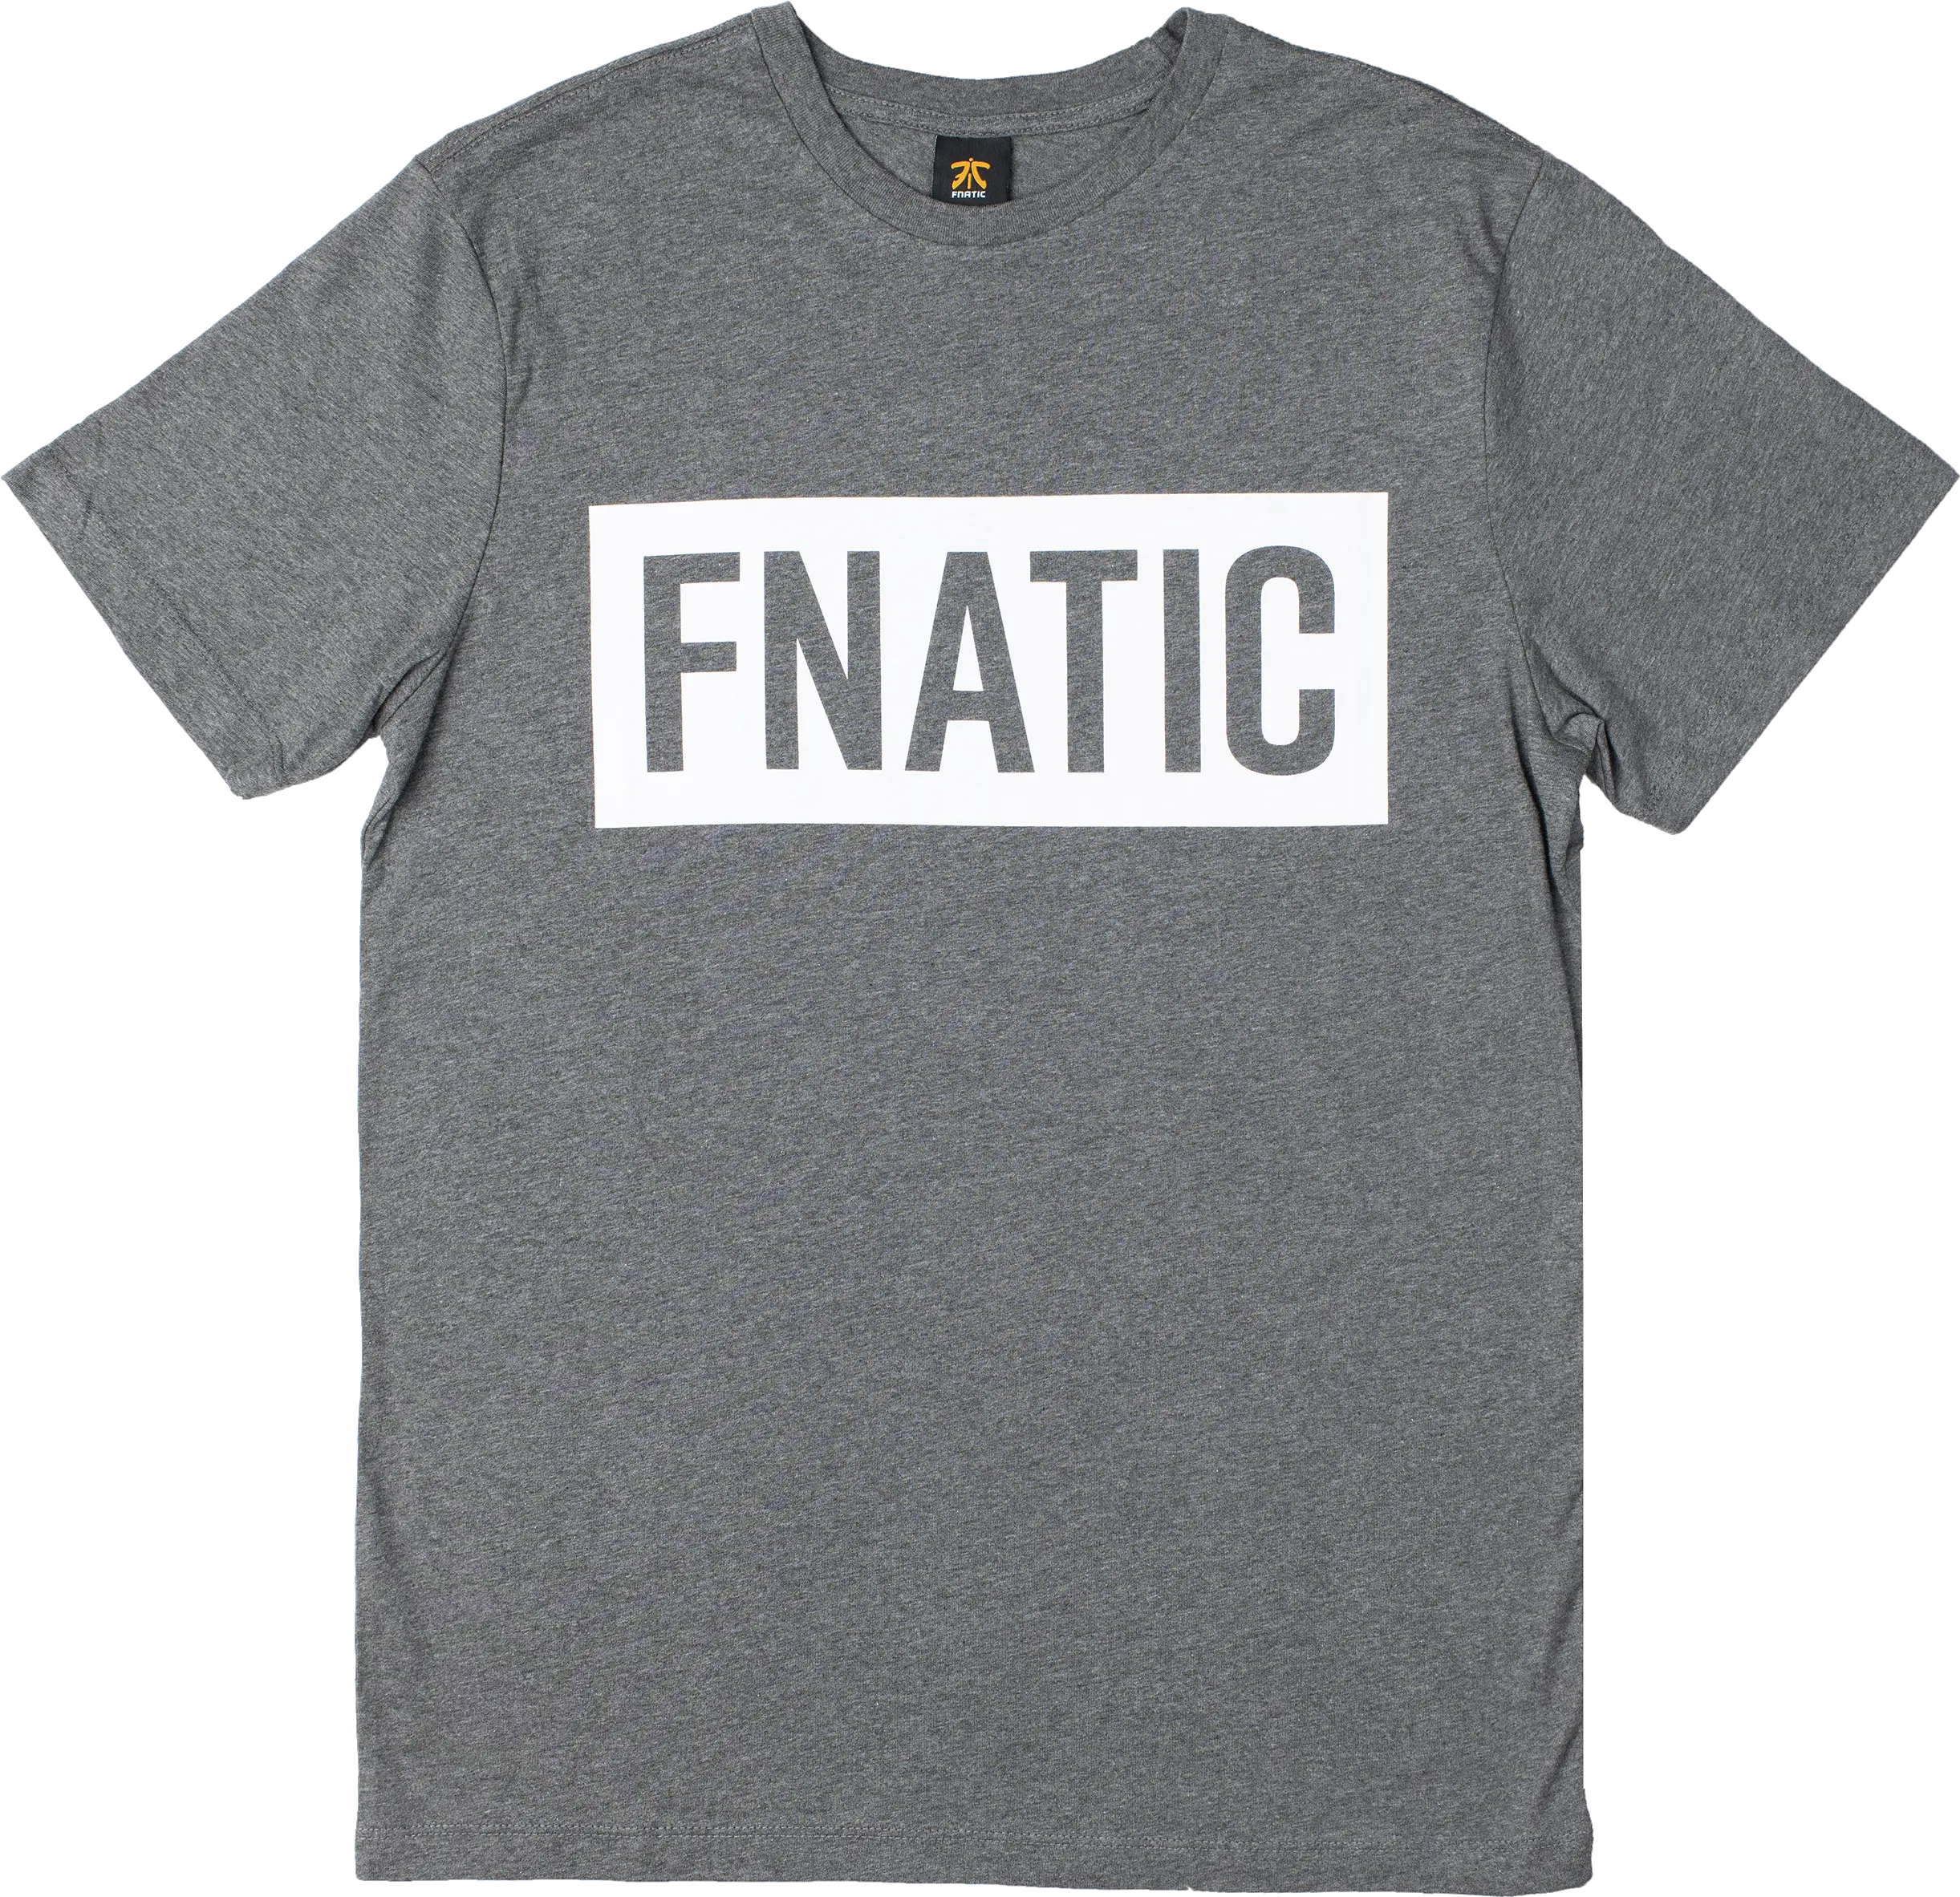 Active Shirt Png Fnatic Logo